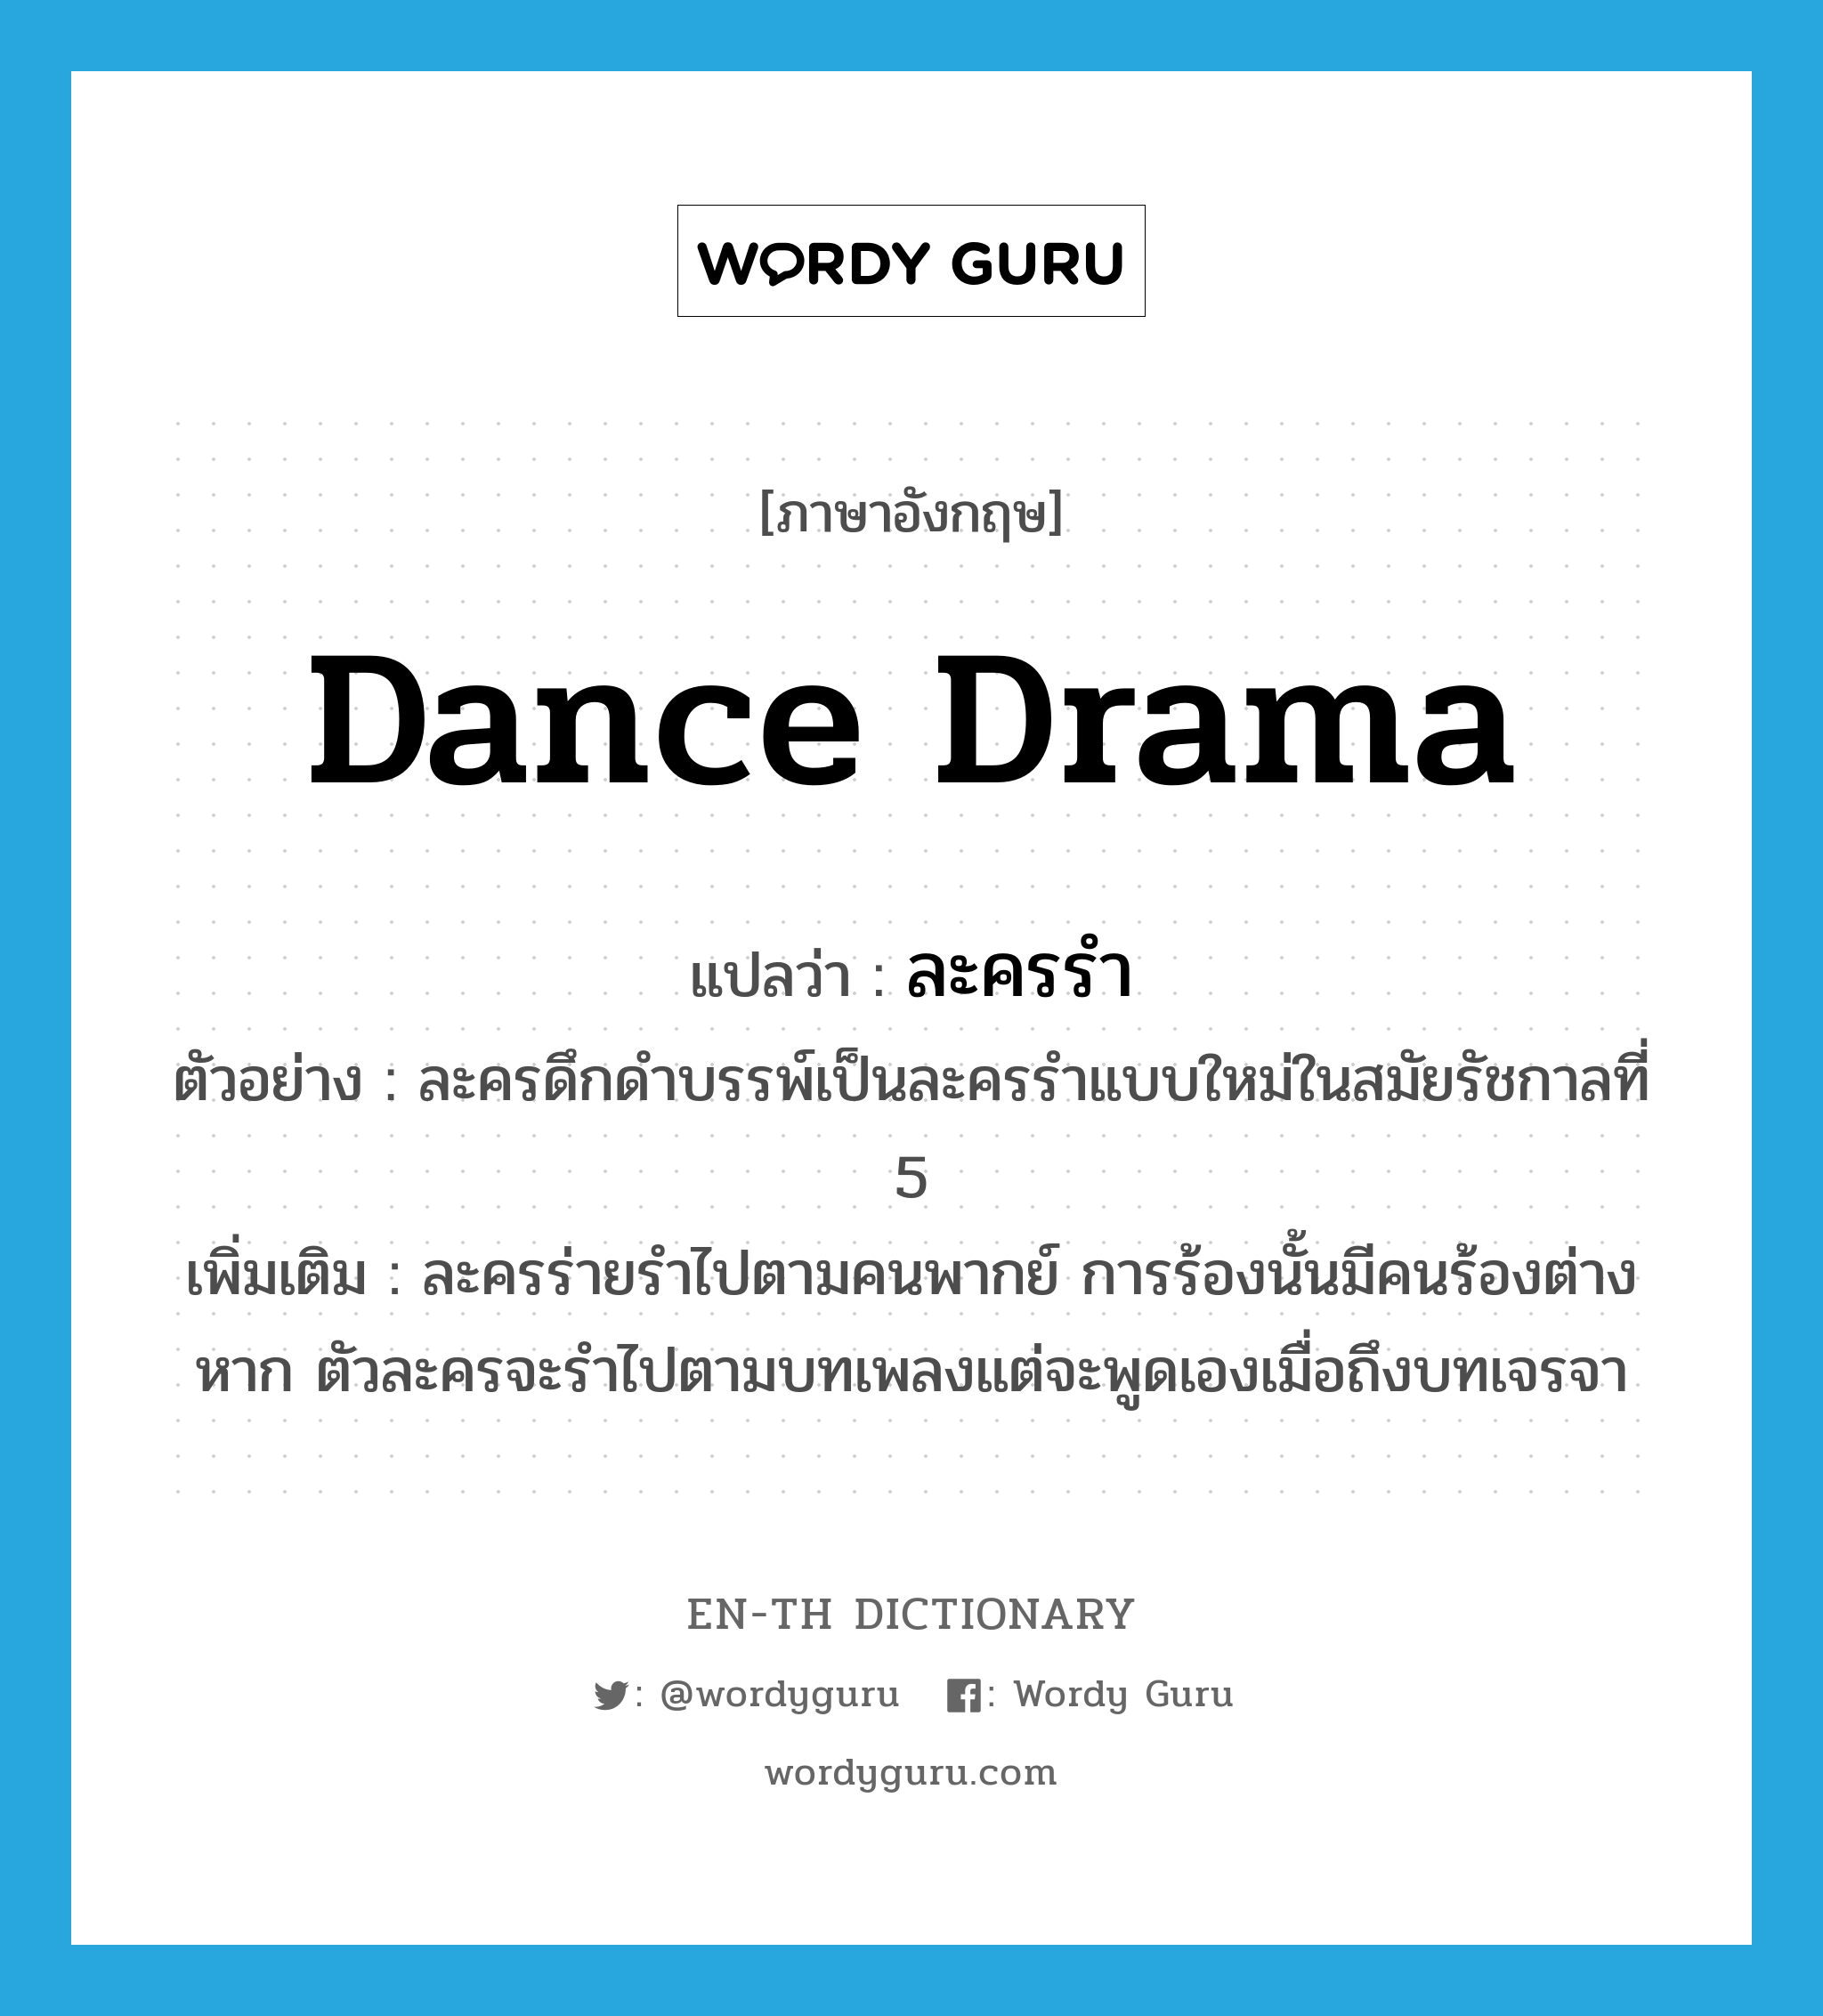 dance drama แปลว่า?, คำศัพท์ภาษาอังกฤษ dance drama แปลว่า ละครรำ ประเภท N ตัวอย่าง ละครดึกดำบรรพ์เป็นละครรำแบบใหม่ในสมัยรัชกาลที่ 5 เพิ่มเติม ละครร่ายรำไปตามคนพากย์ การร้องนั้นมีคนร้องต่างหาก ตัวละครจะรำไปตามบทเพลงแต่จะพูดเองเมื่อถึงบทเจรจา หมวด N